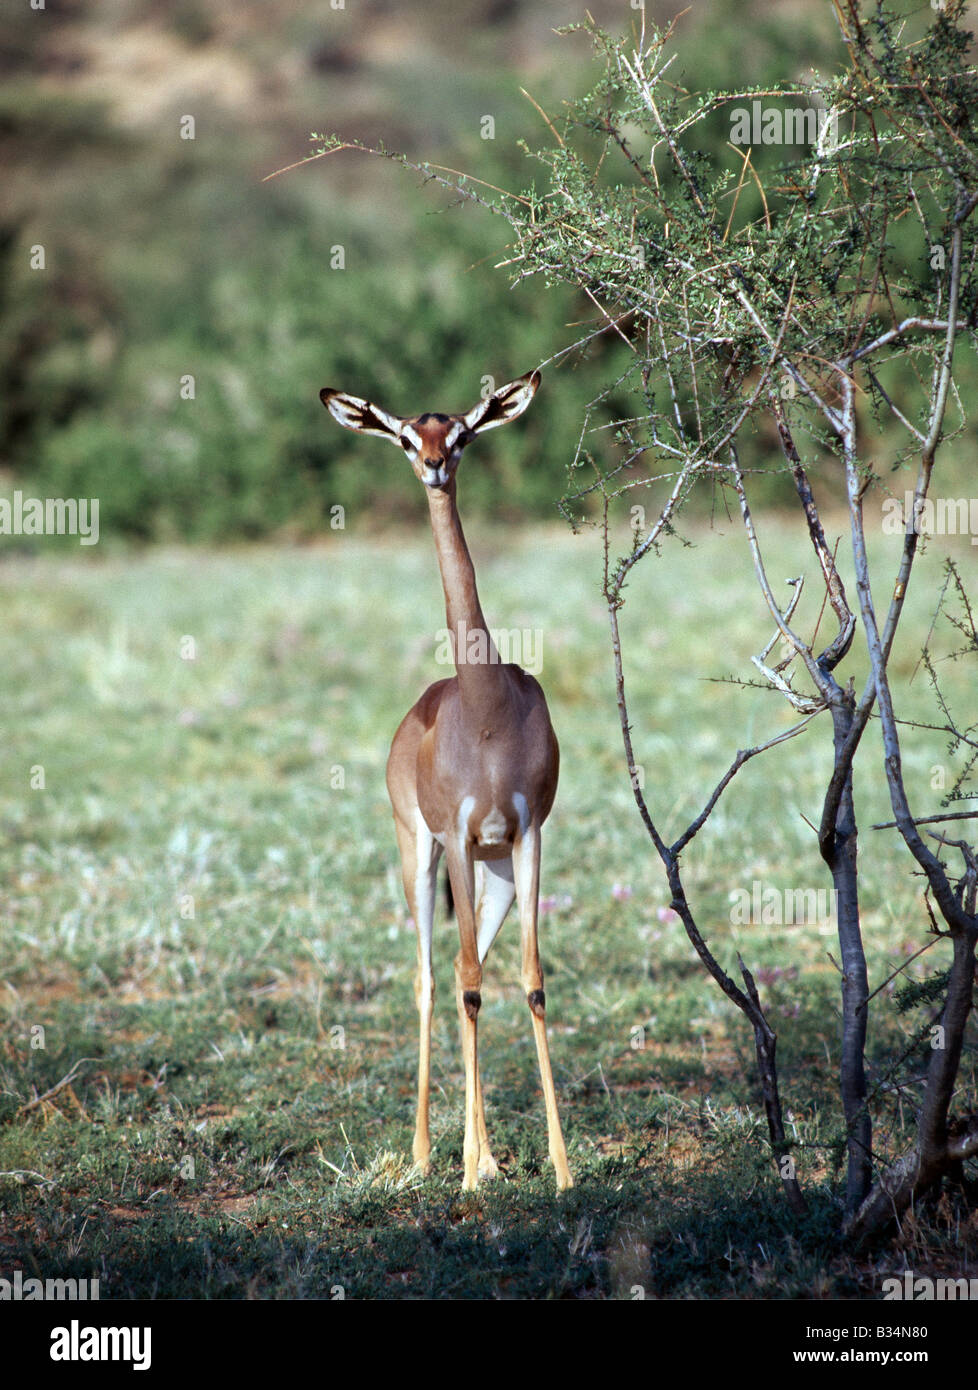 Kenya, Samburu, Samburu National Reserve. Une femelle gerenuk (un nom dérivé de la langue somalienne qui signifie "cou de girafe") dans la réserve nationale de Samburu au nord du Kenya. Leur long cou et de grandes oreilles à les distinguer des autres gazelles. Seules les femelles n'ont pas de cornes. Navigateurs strictement, gerenuk peuvent souvent se nourrissant d'agences six pieds de haut en se tenant debout sur leurs sabots en forme de coin, appuyées par leurs fortes pattes.bien adapté à semi-arides, ils peuvent résister à des conditions sans eau avec facilité. . Banque D'Images